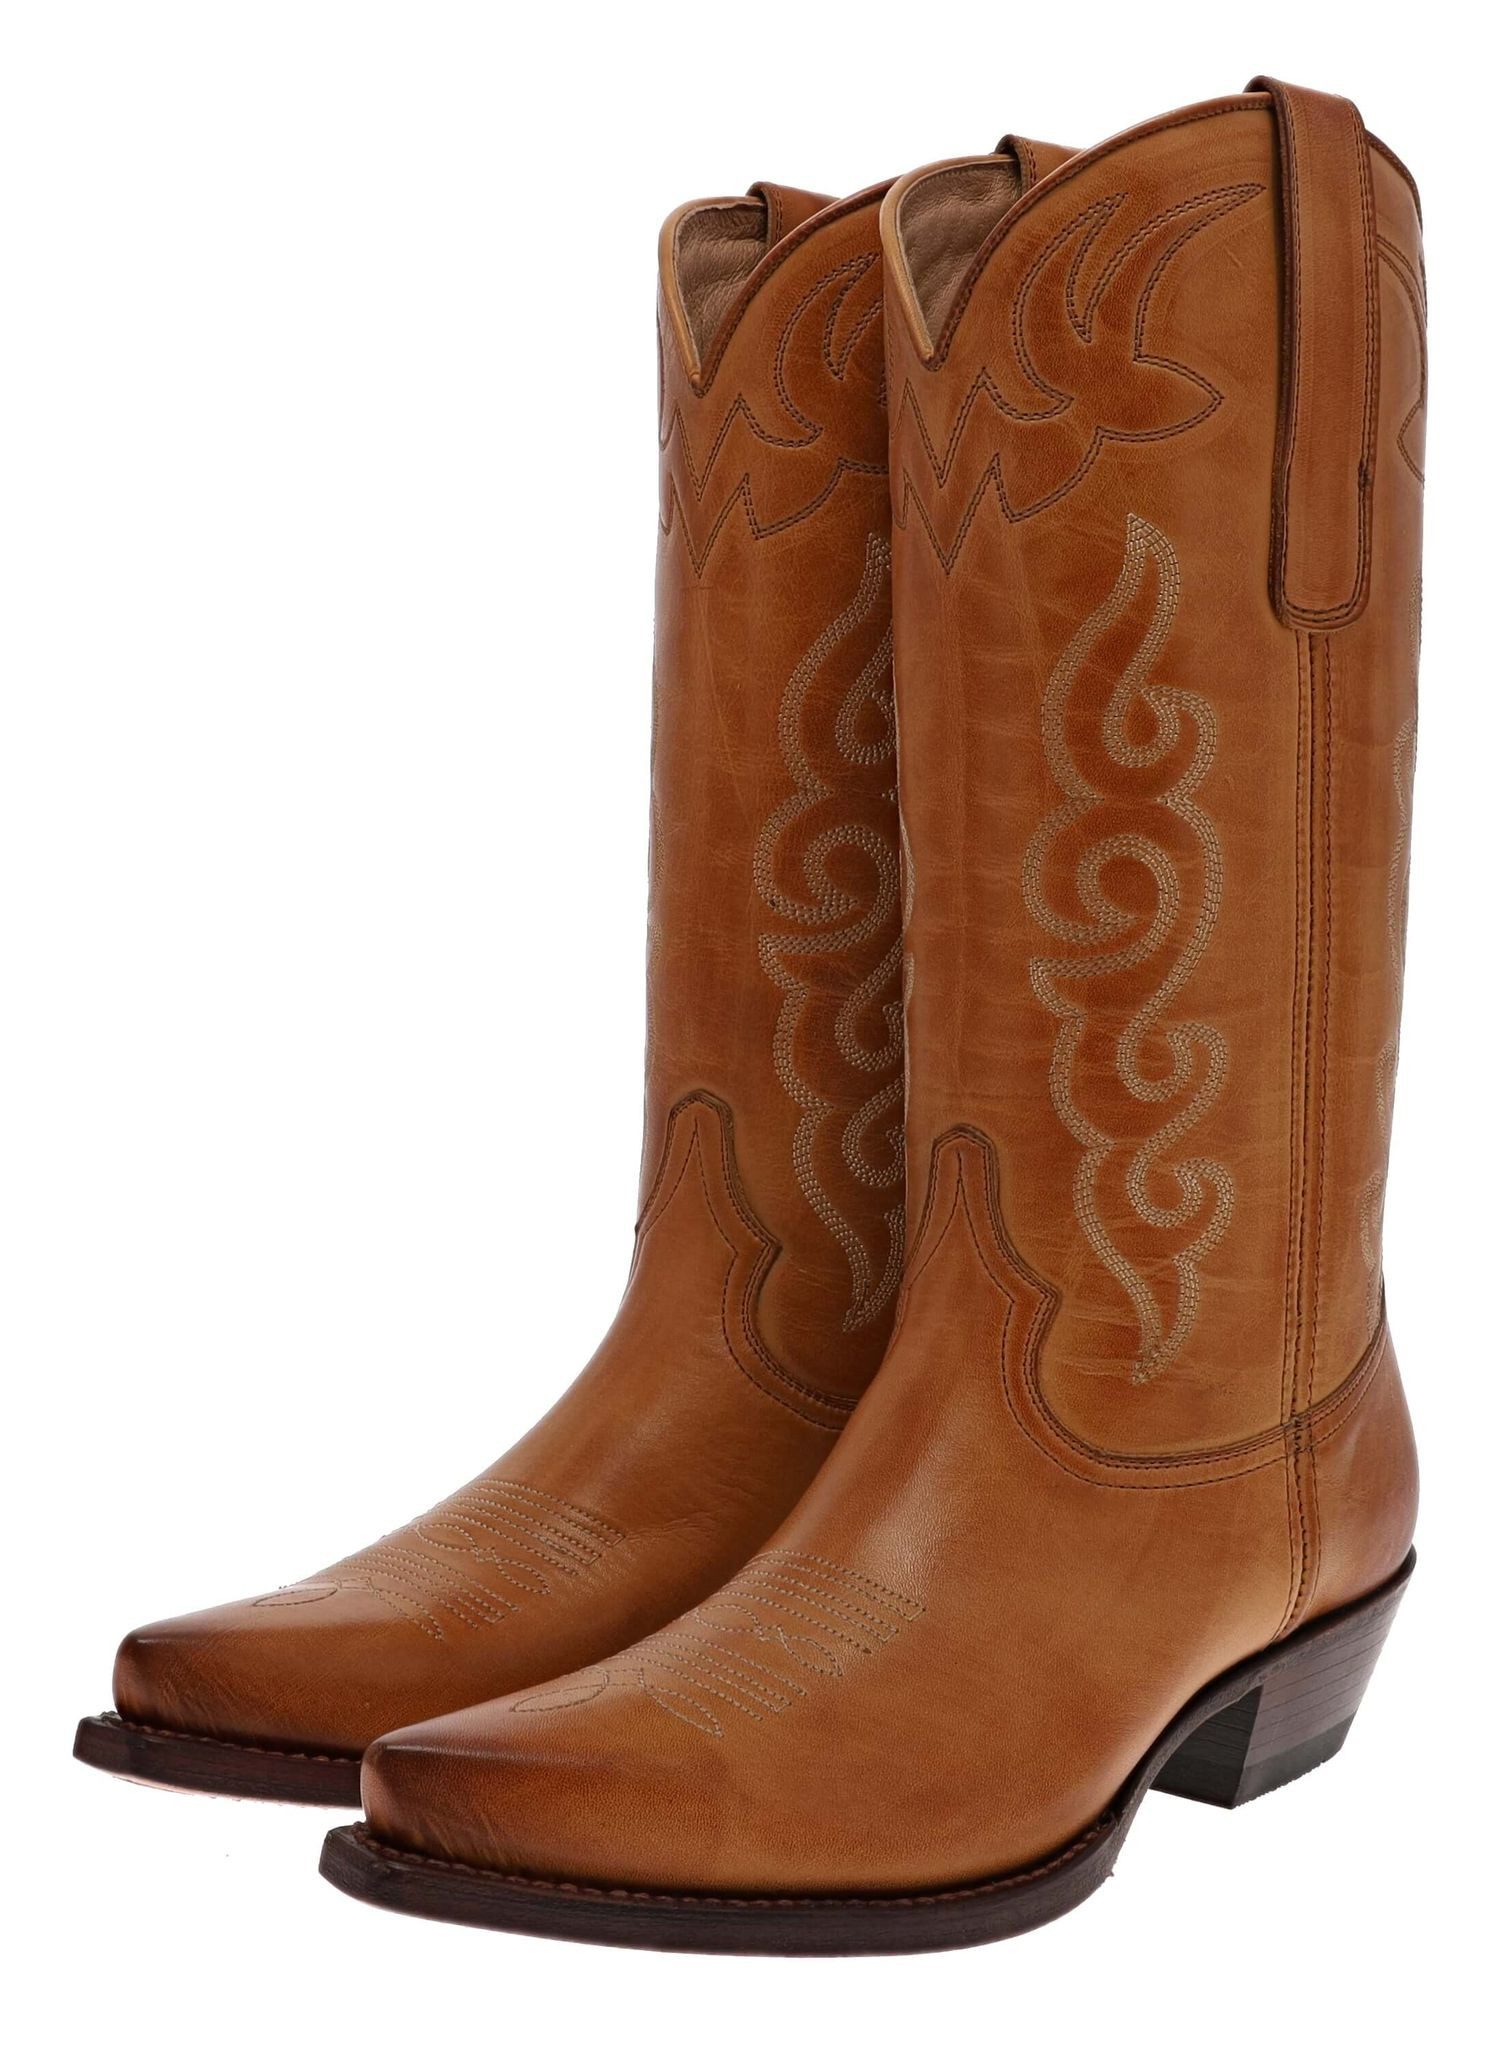 FB Fashion Boots VITORIA Braun Cowboystiefel Rahmengenähte Damen Westernstiefel